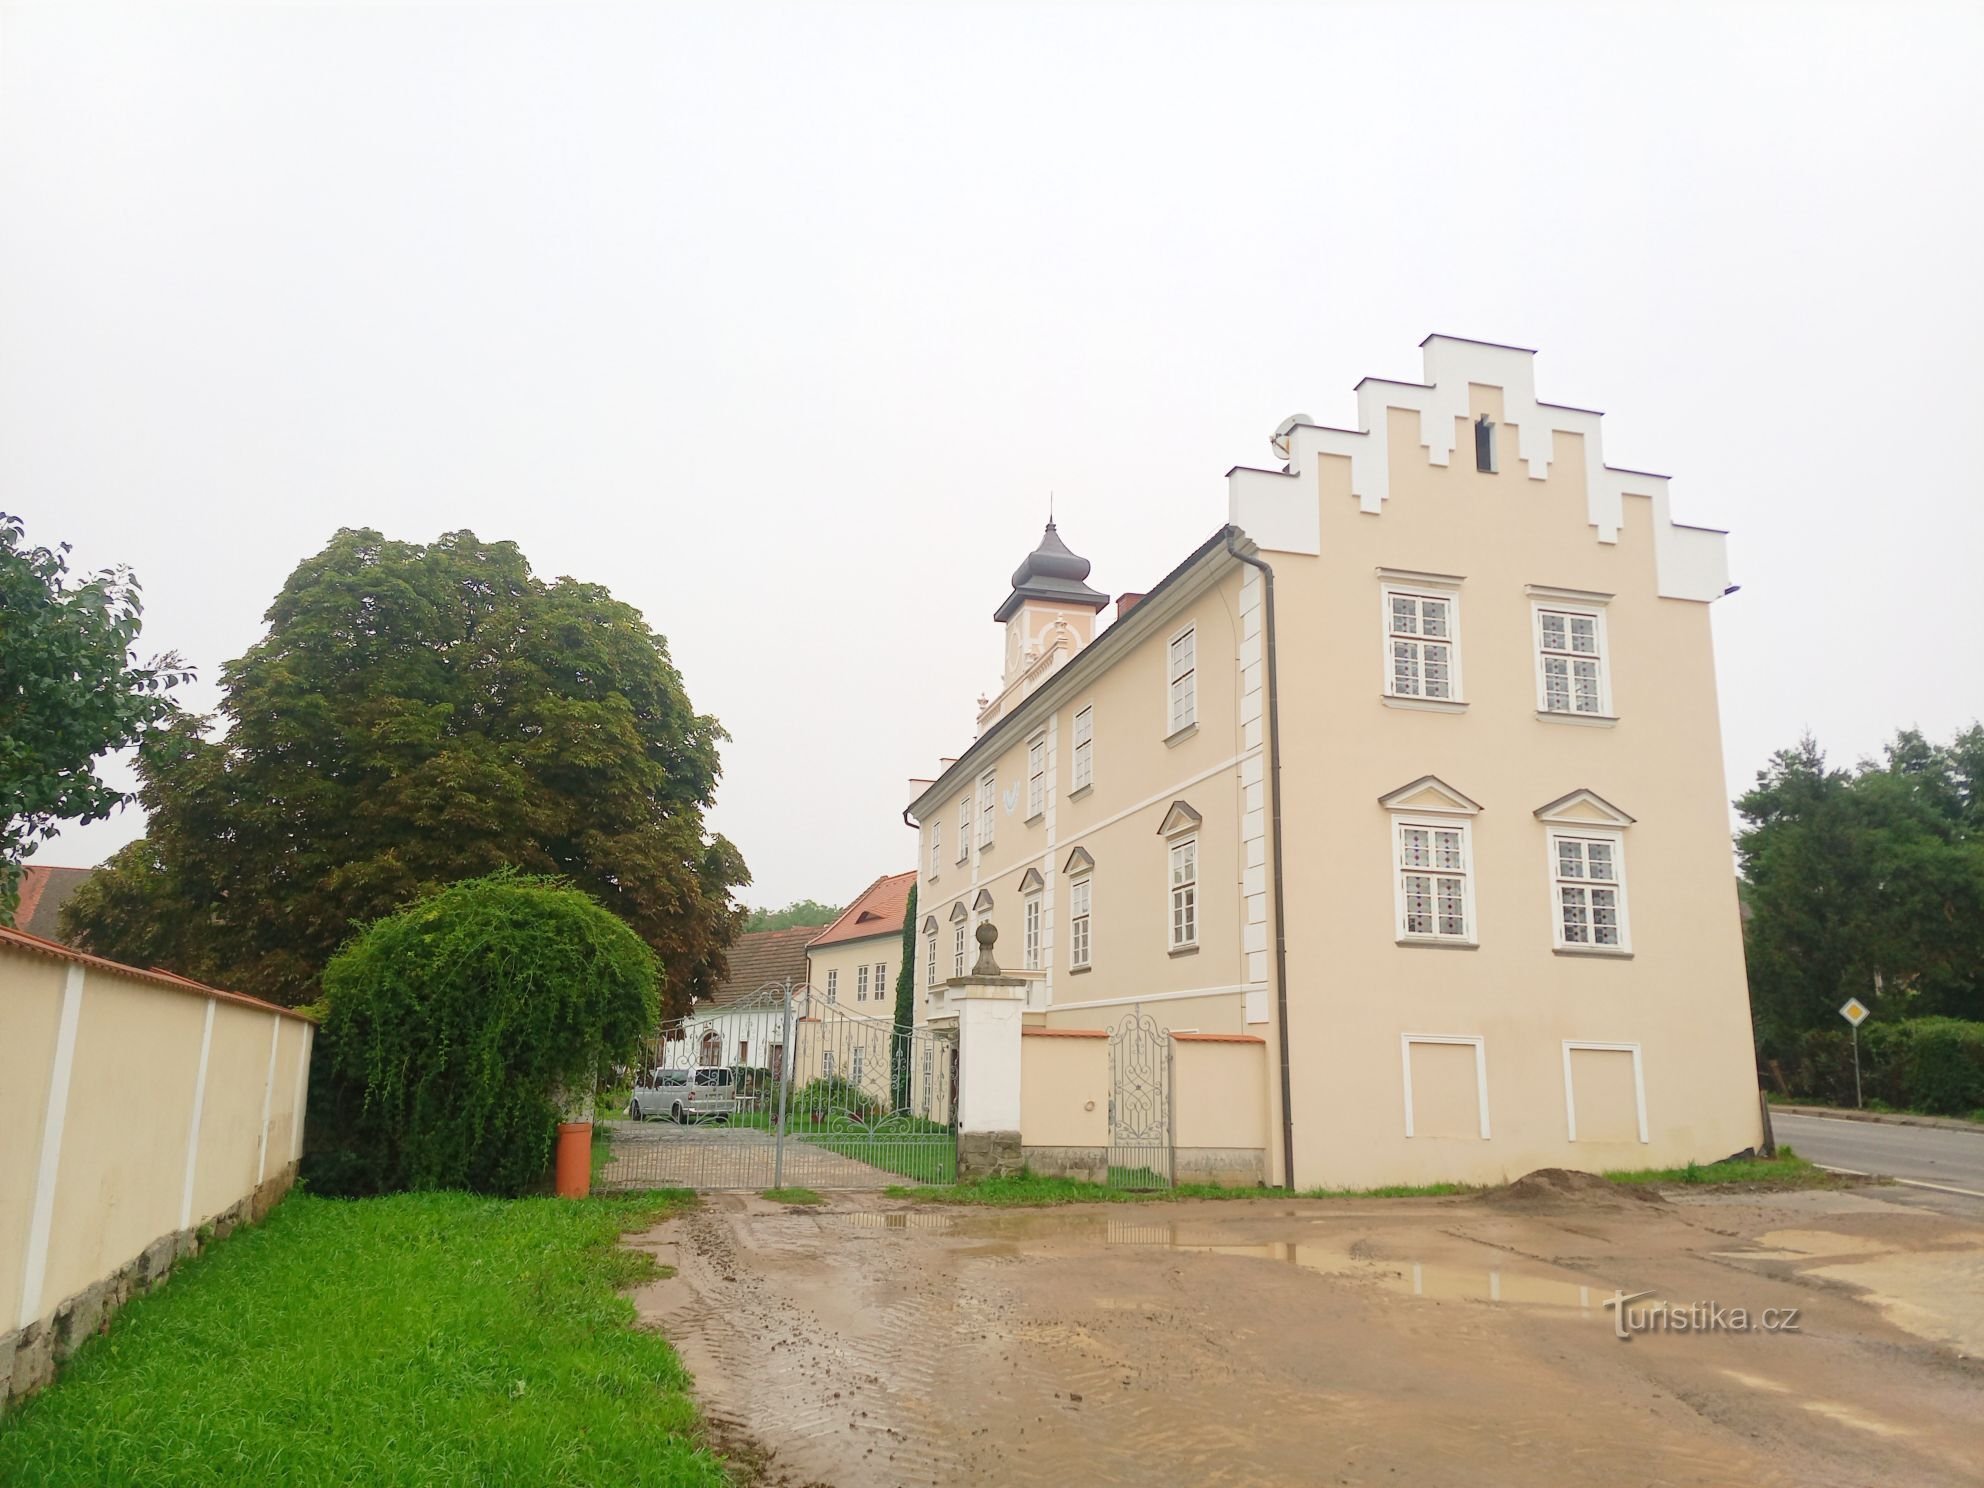 1. Castelo renascentista em Kňovice do início do século XVII. Um edifício retangular de dois andares com tr